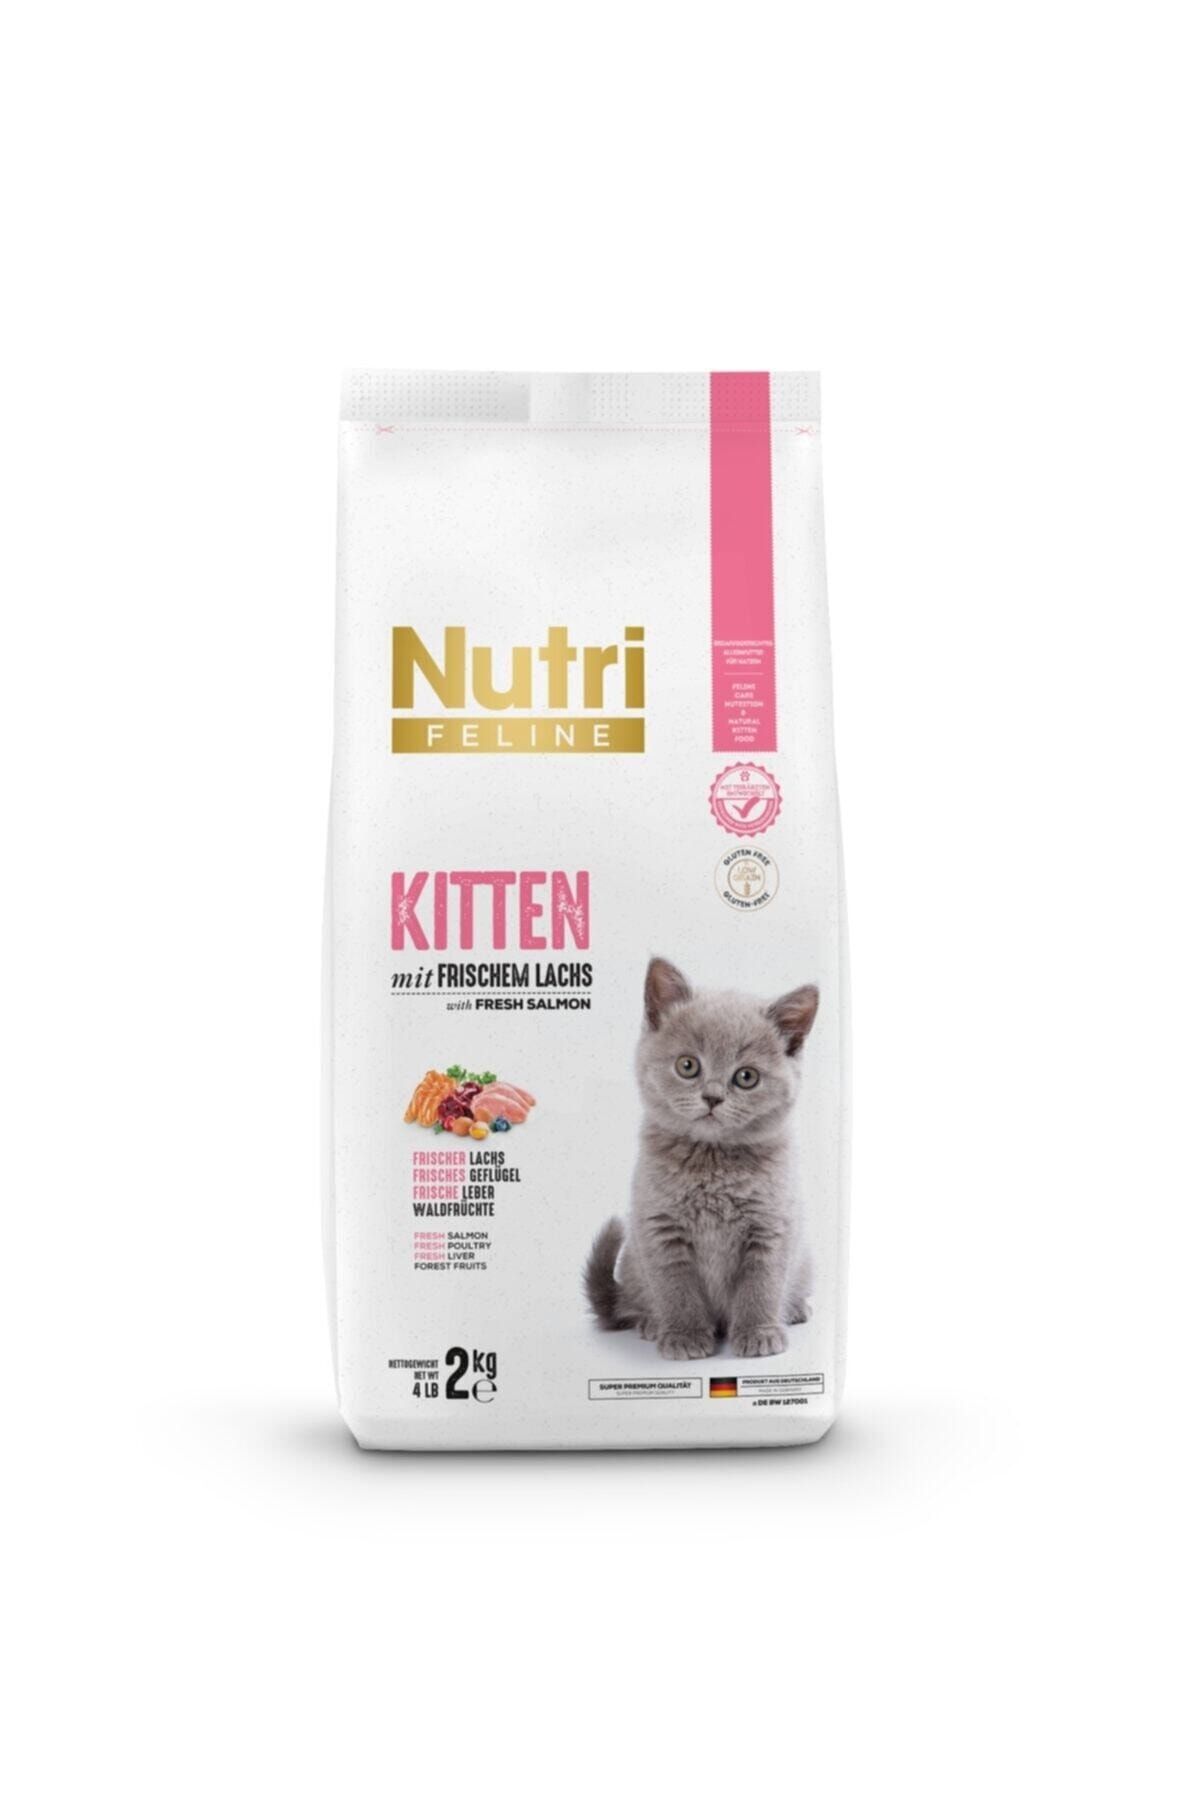 Nutri Feline Kıtten (yavru Kediler Için Komple, Vitaminli Mama) 2 Kg